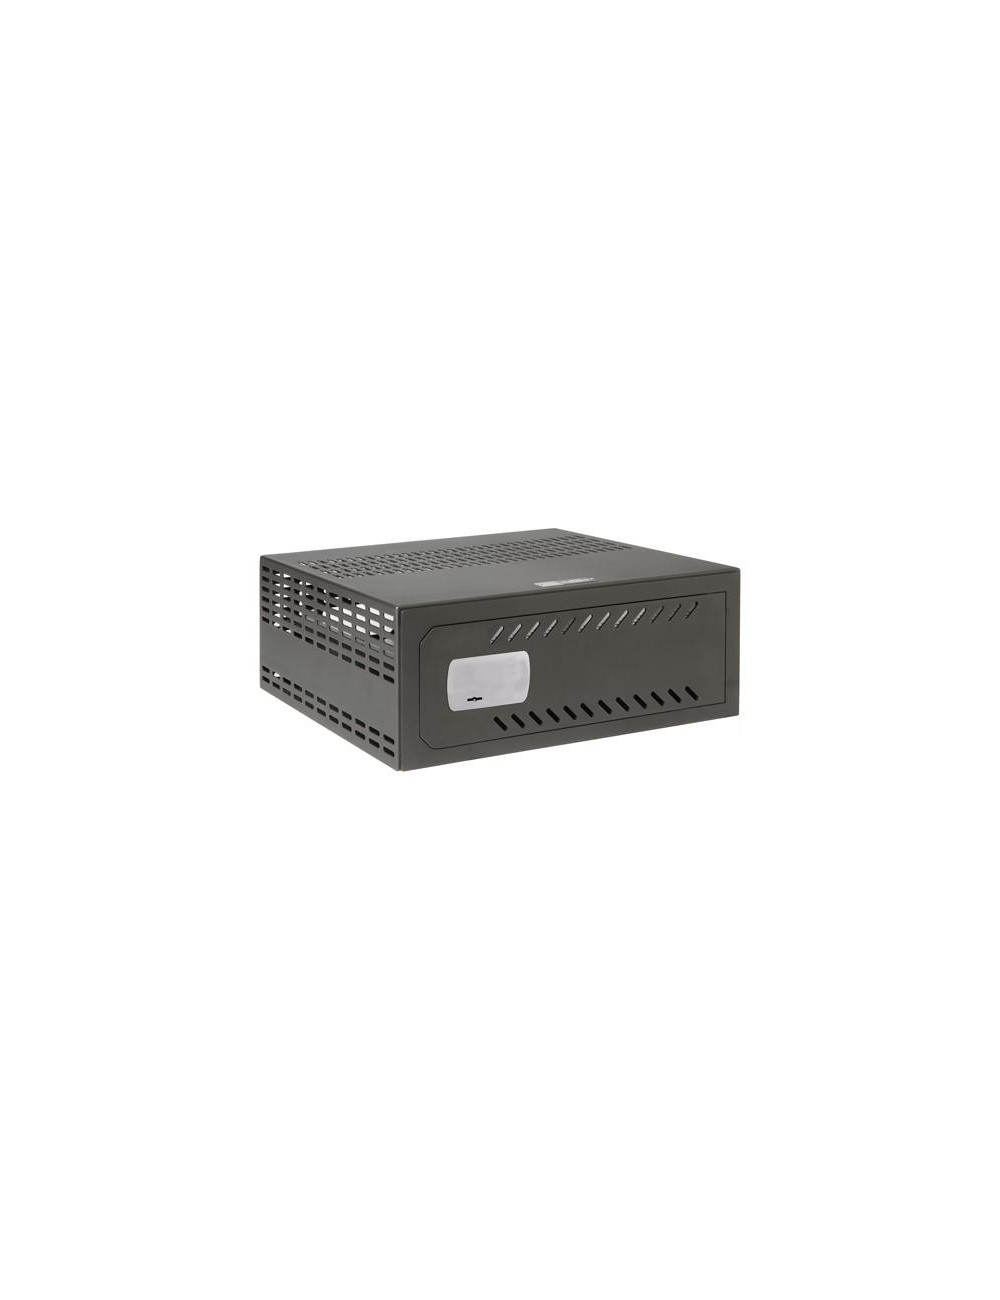 Cassaforte per DVR da 1U rack - Specifico per CCTV - serratura meccanica di sicurezza